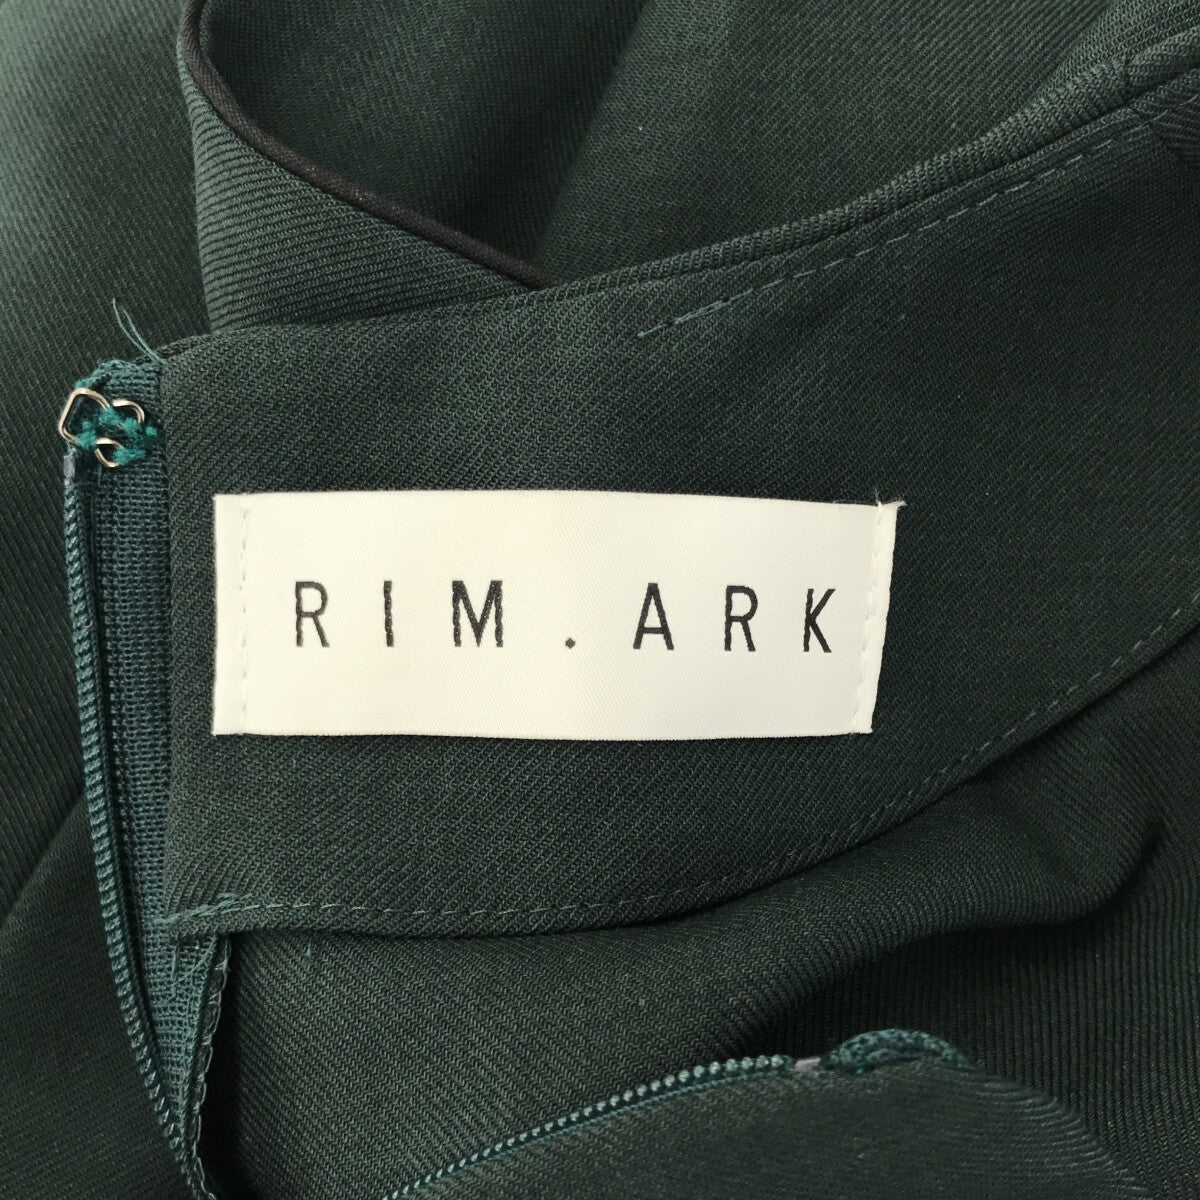 RIM.ARK / リムアーク | Ruffle tops トップス | 36 | ダークグリーン | レディース